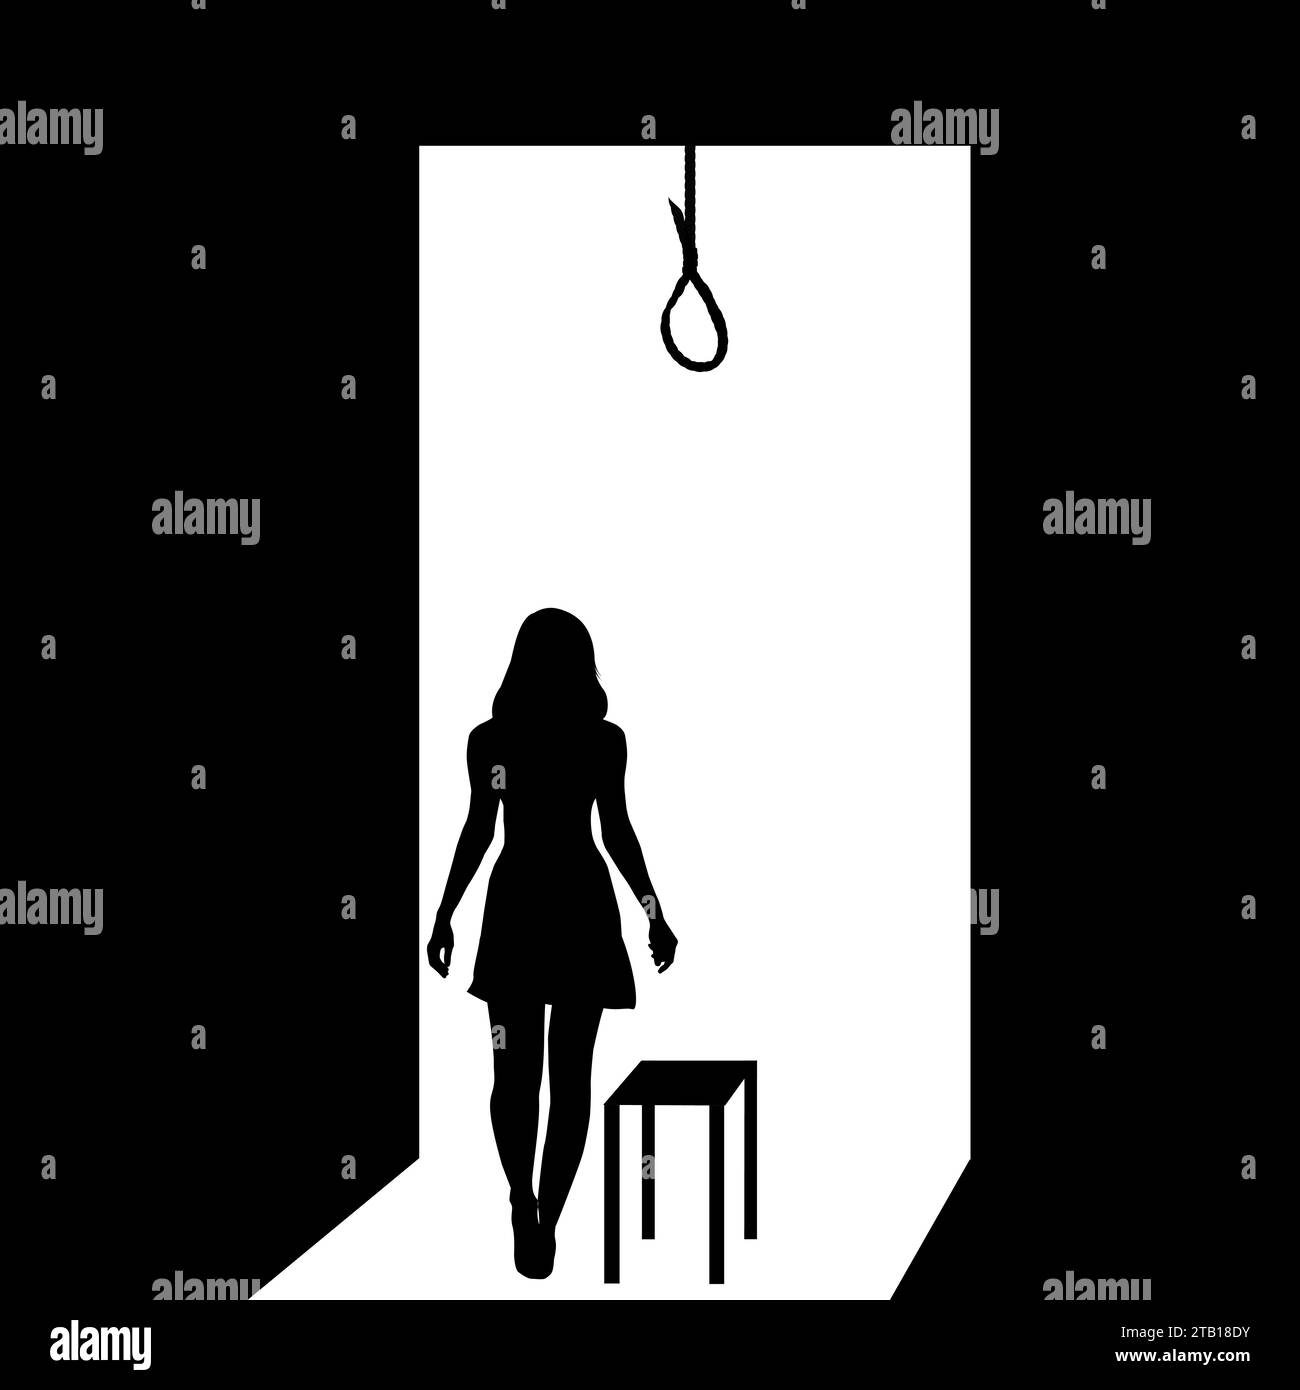 Die Frau will Selbstmord begehen, indem sie am Seil hängt. Stock Vektor